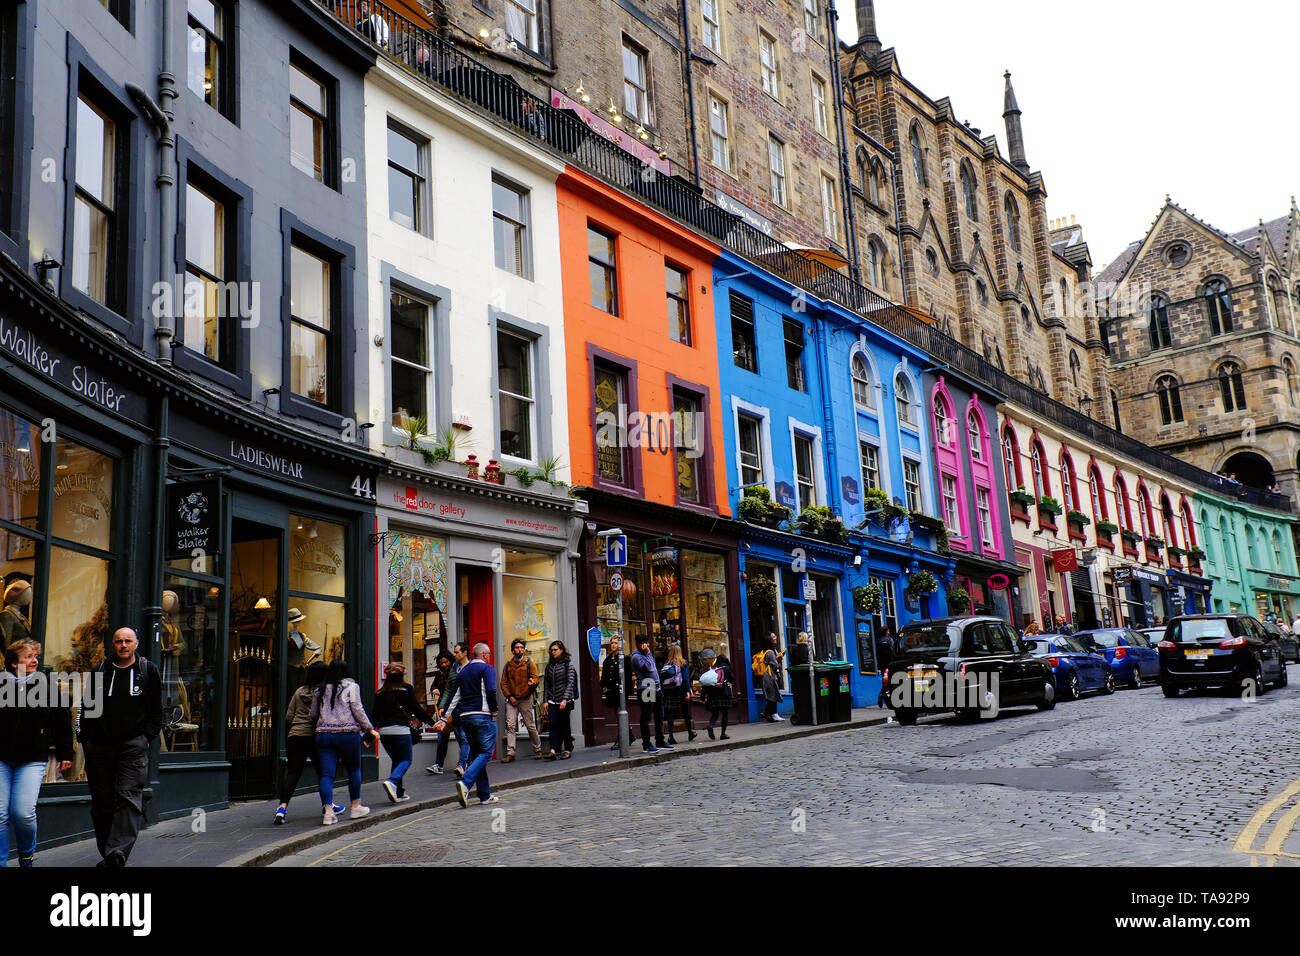 Édimbourg, maisons colorées de la rue Victoria Ecosse 8 mai - 19 mai. Voyage à travers l'Écosse Foto Samantha Insidefoto Zucchi Banque D'Images